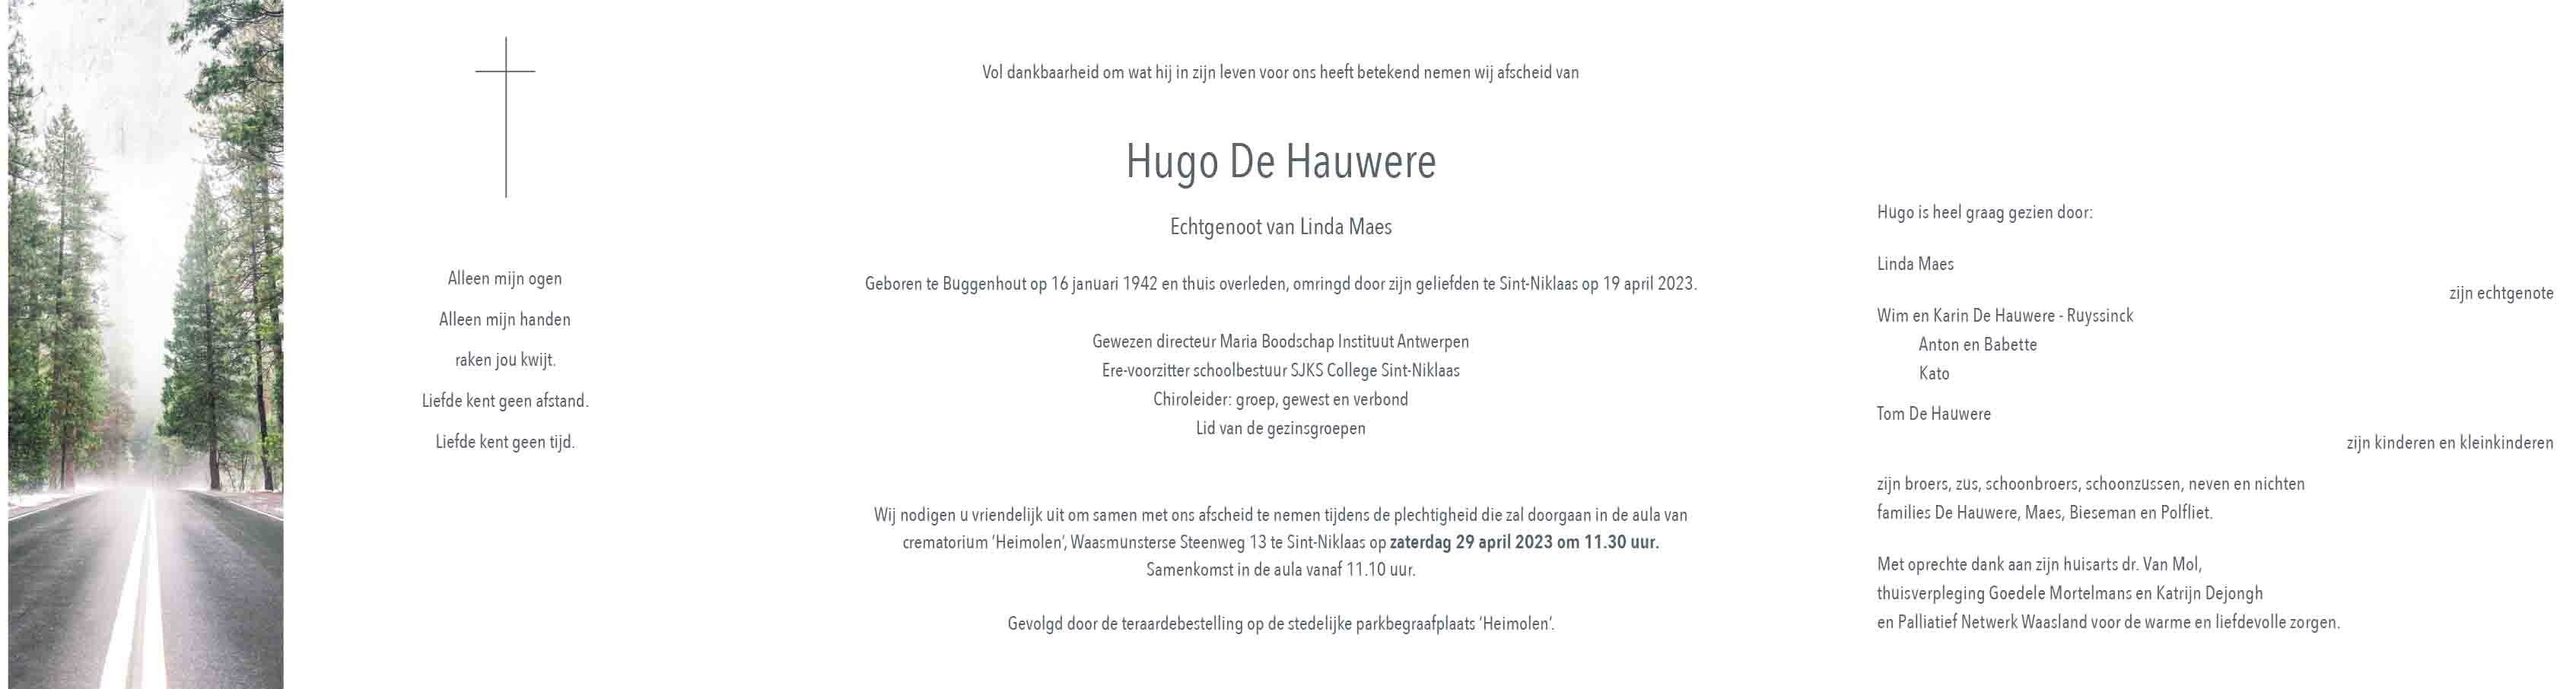 Hugo De Hauwere def 2